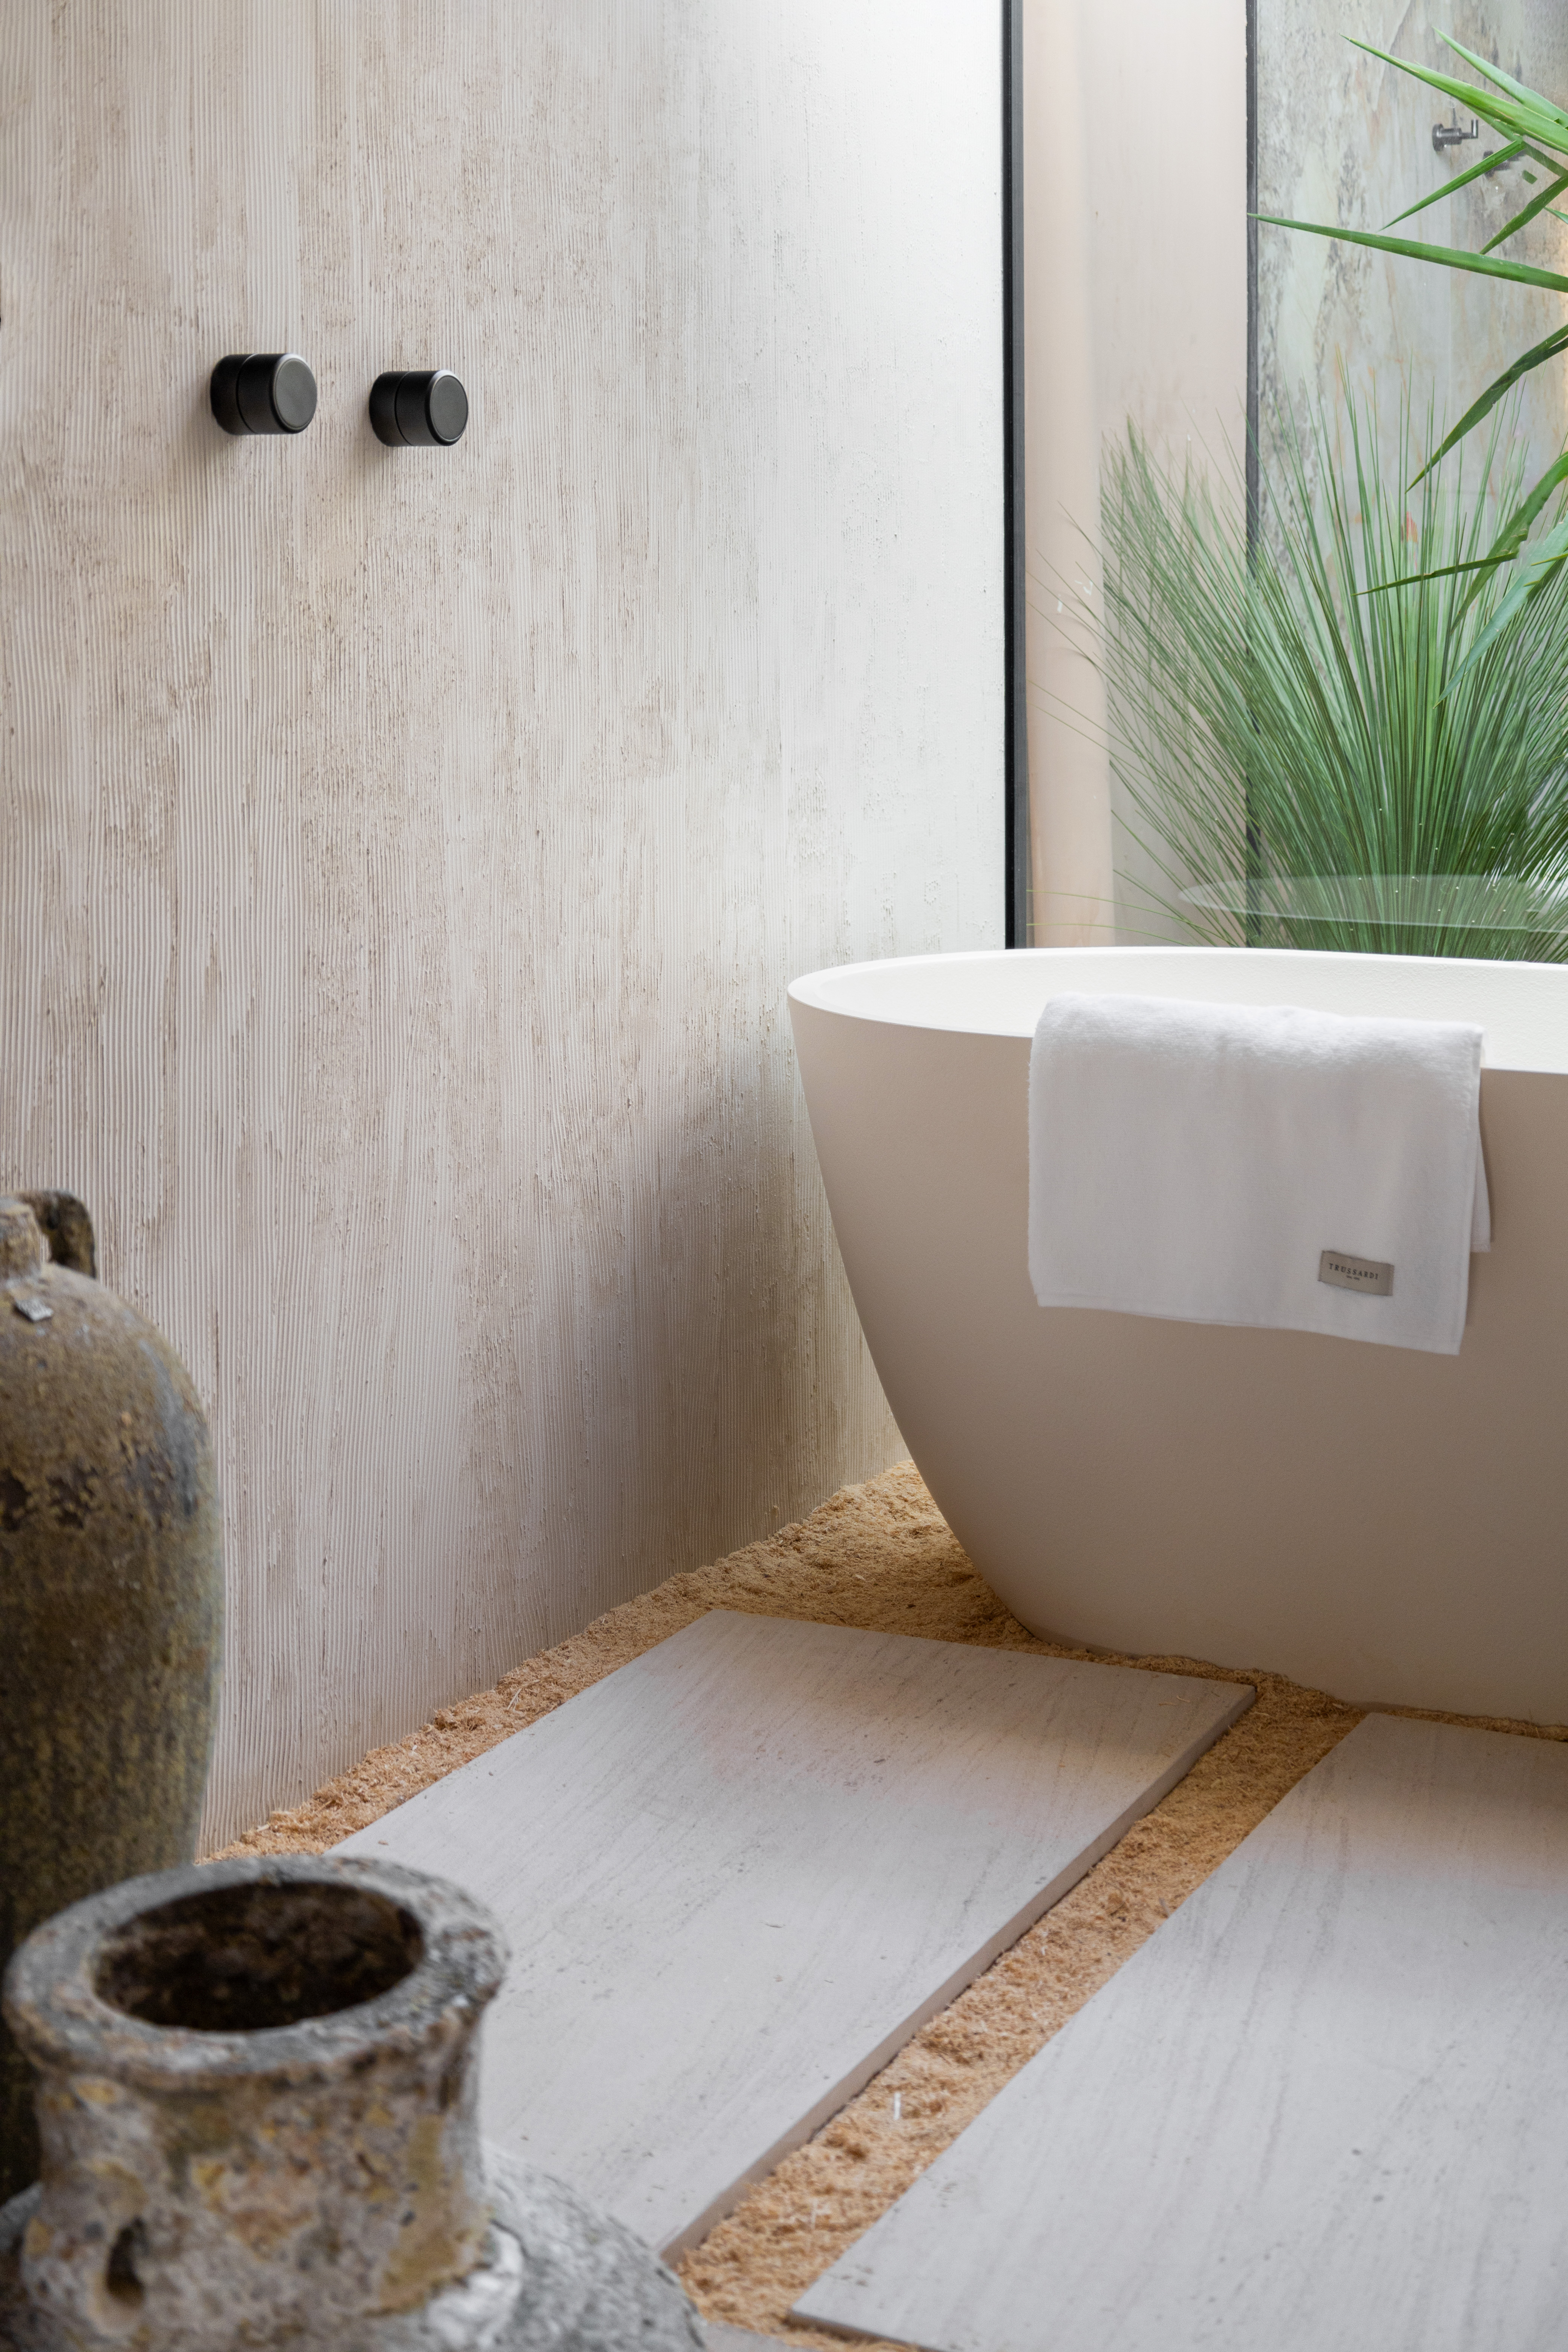 SPA em Casa: banheiro conecta arquitetura e natureza. Projeto de Bruno Dutkievicz e Raphael Meza. Na foto, banheiro com banheira e espaço de ducha